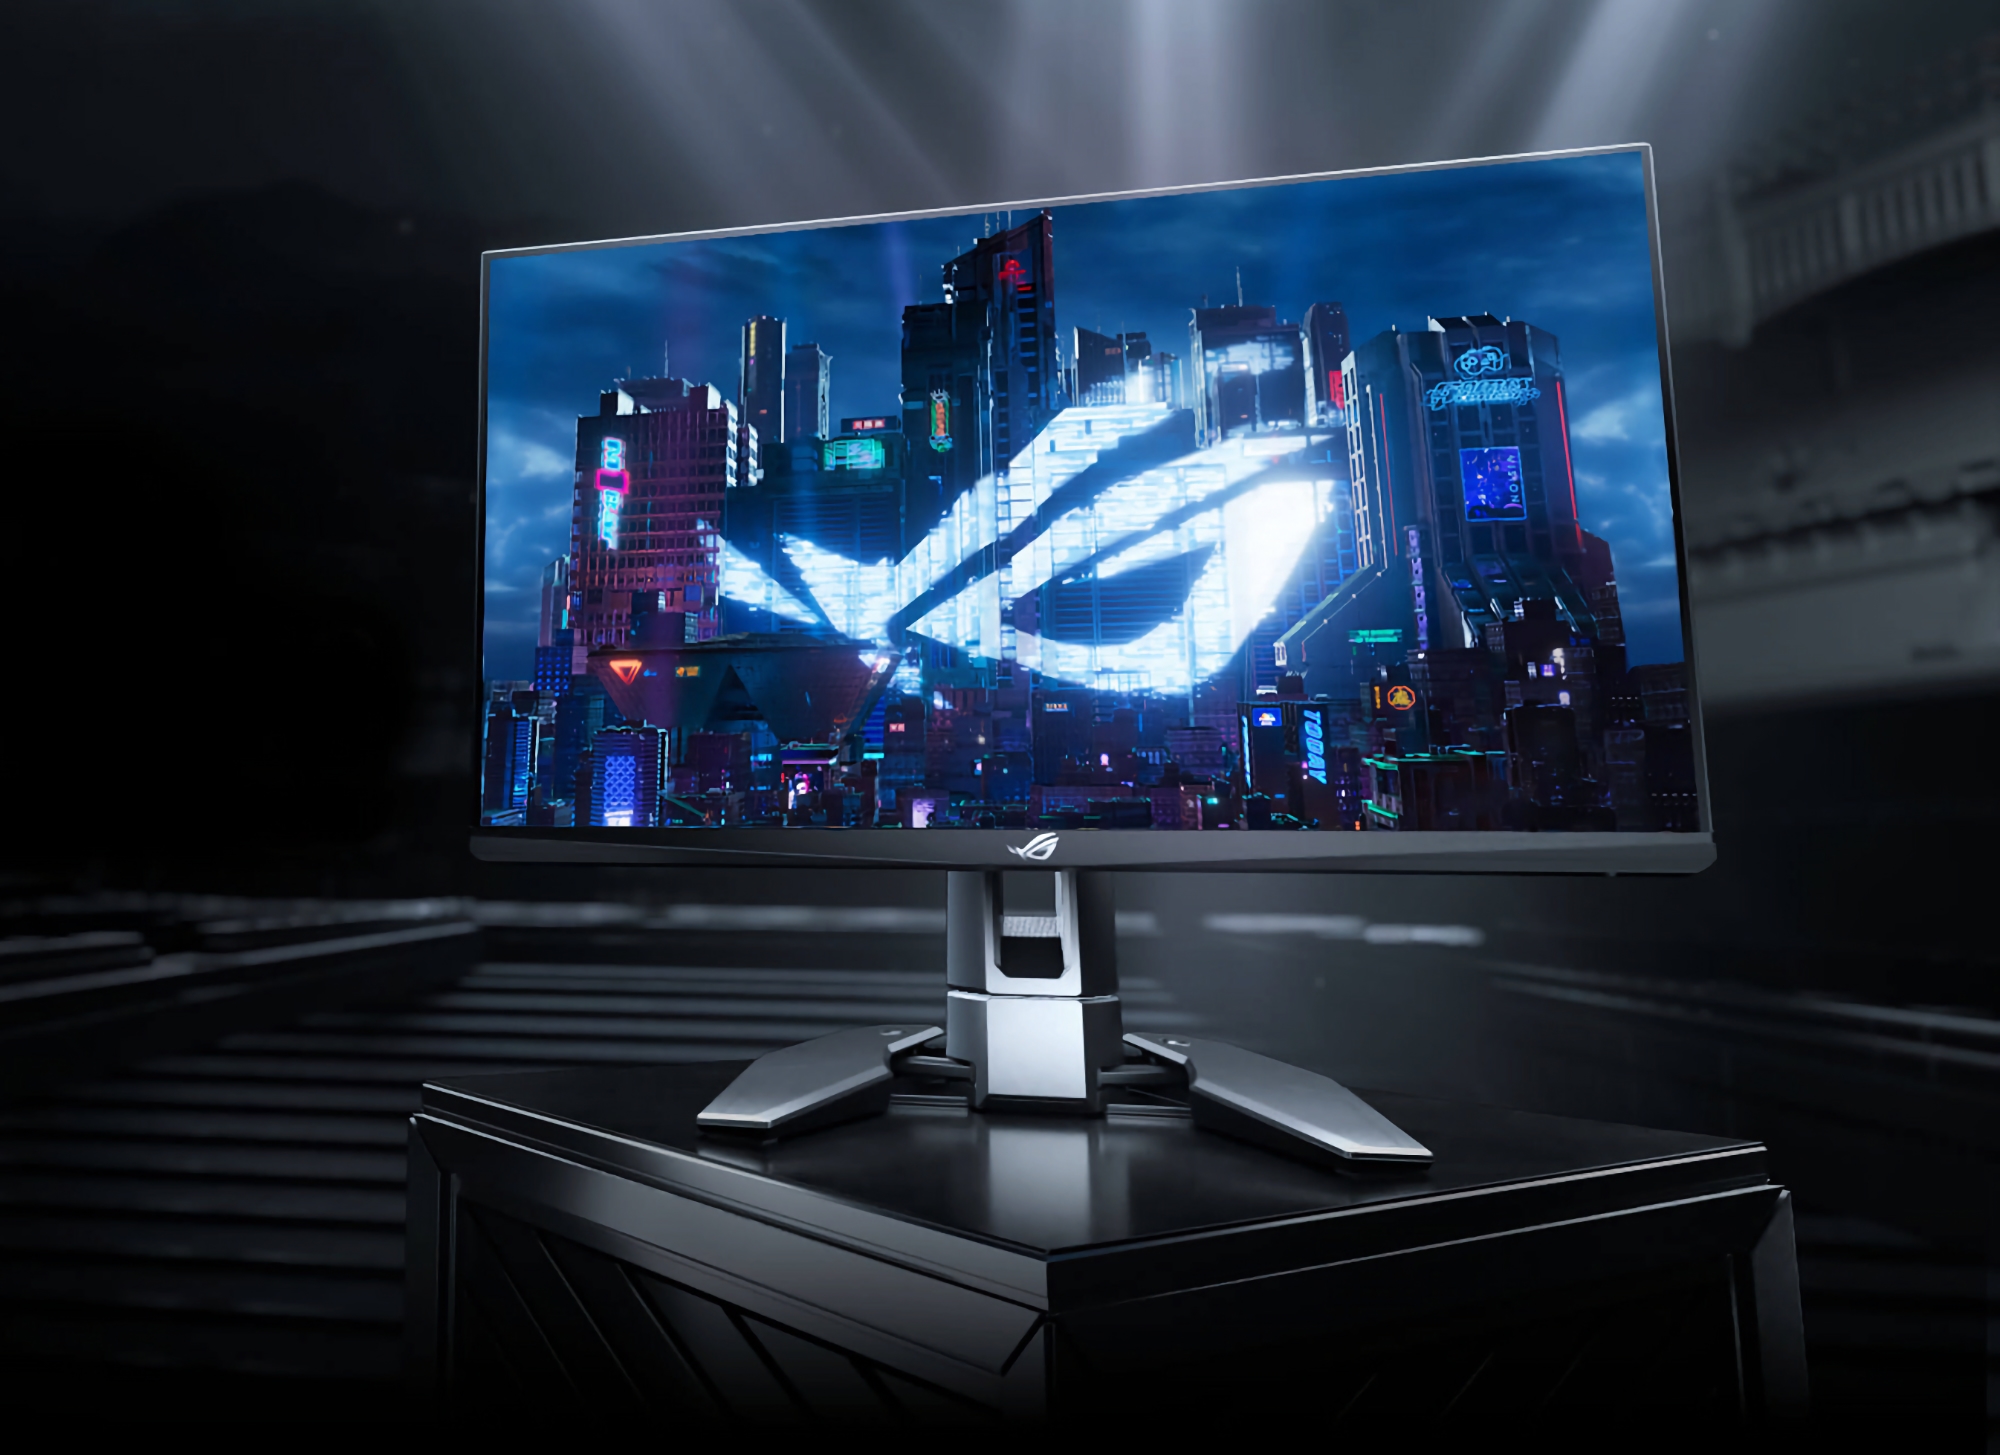 CES ] Asus présente le premier écran 360 Hz et Nvidia G-Sync